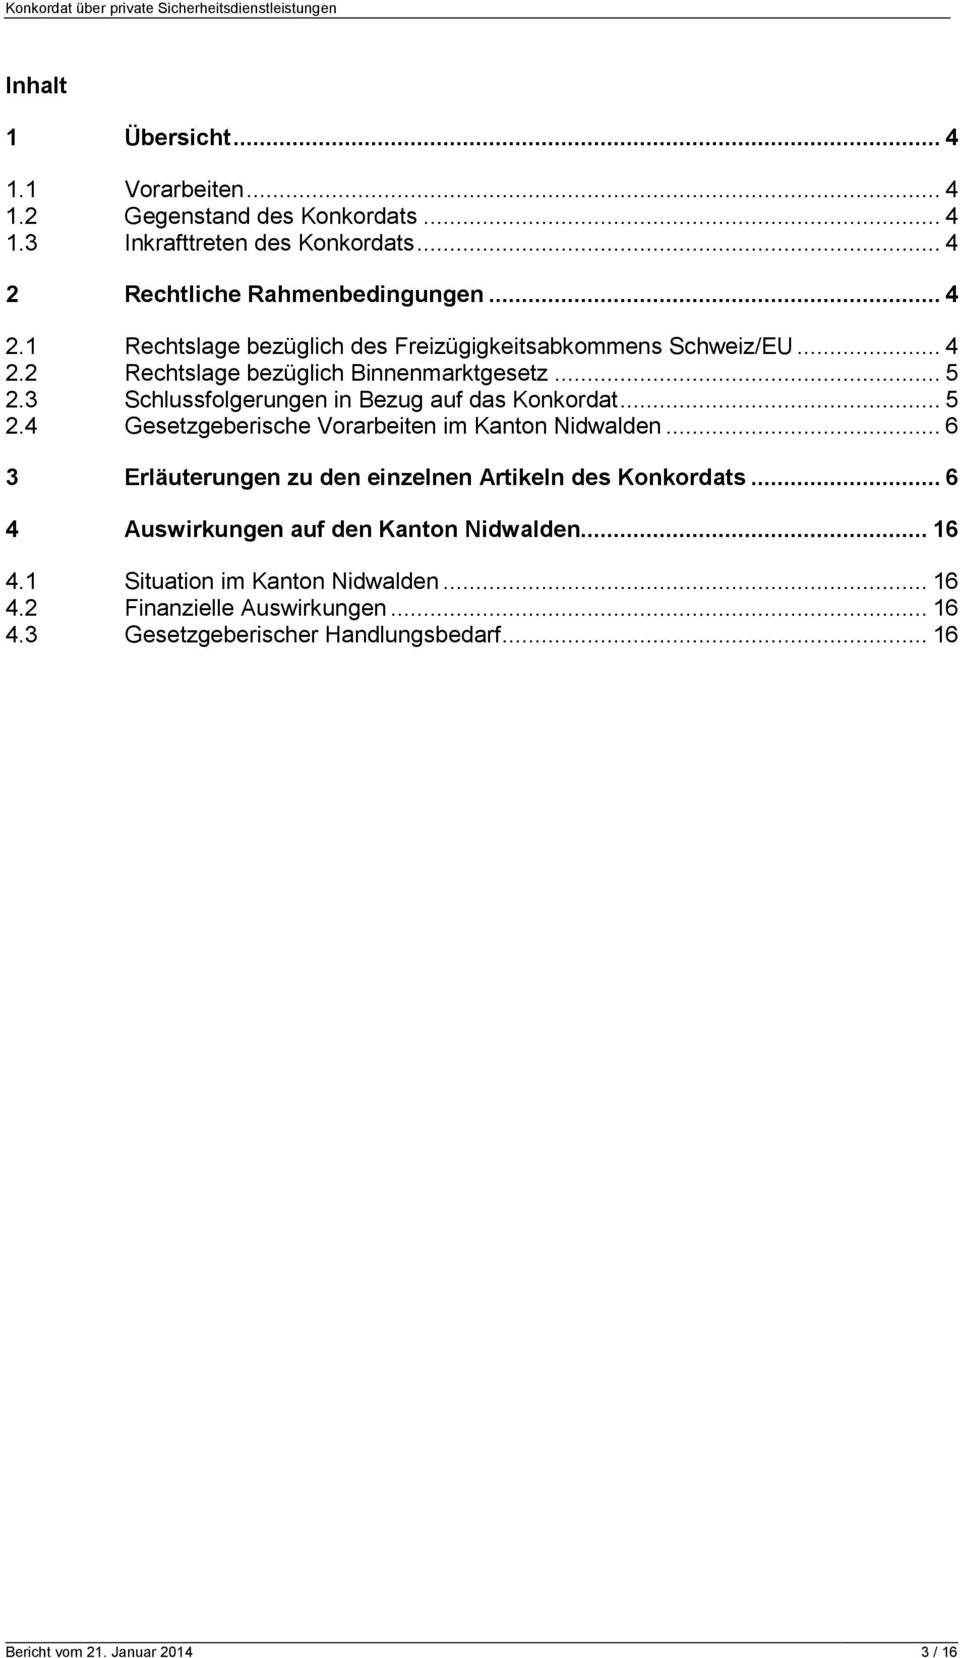 3 Schlussfolgerungen in Bezug auf das Konkordat... 5 2.4 Gesetzgeberische Vorarbeiten im Kanton Nidwalden.